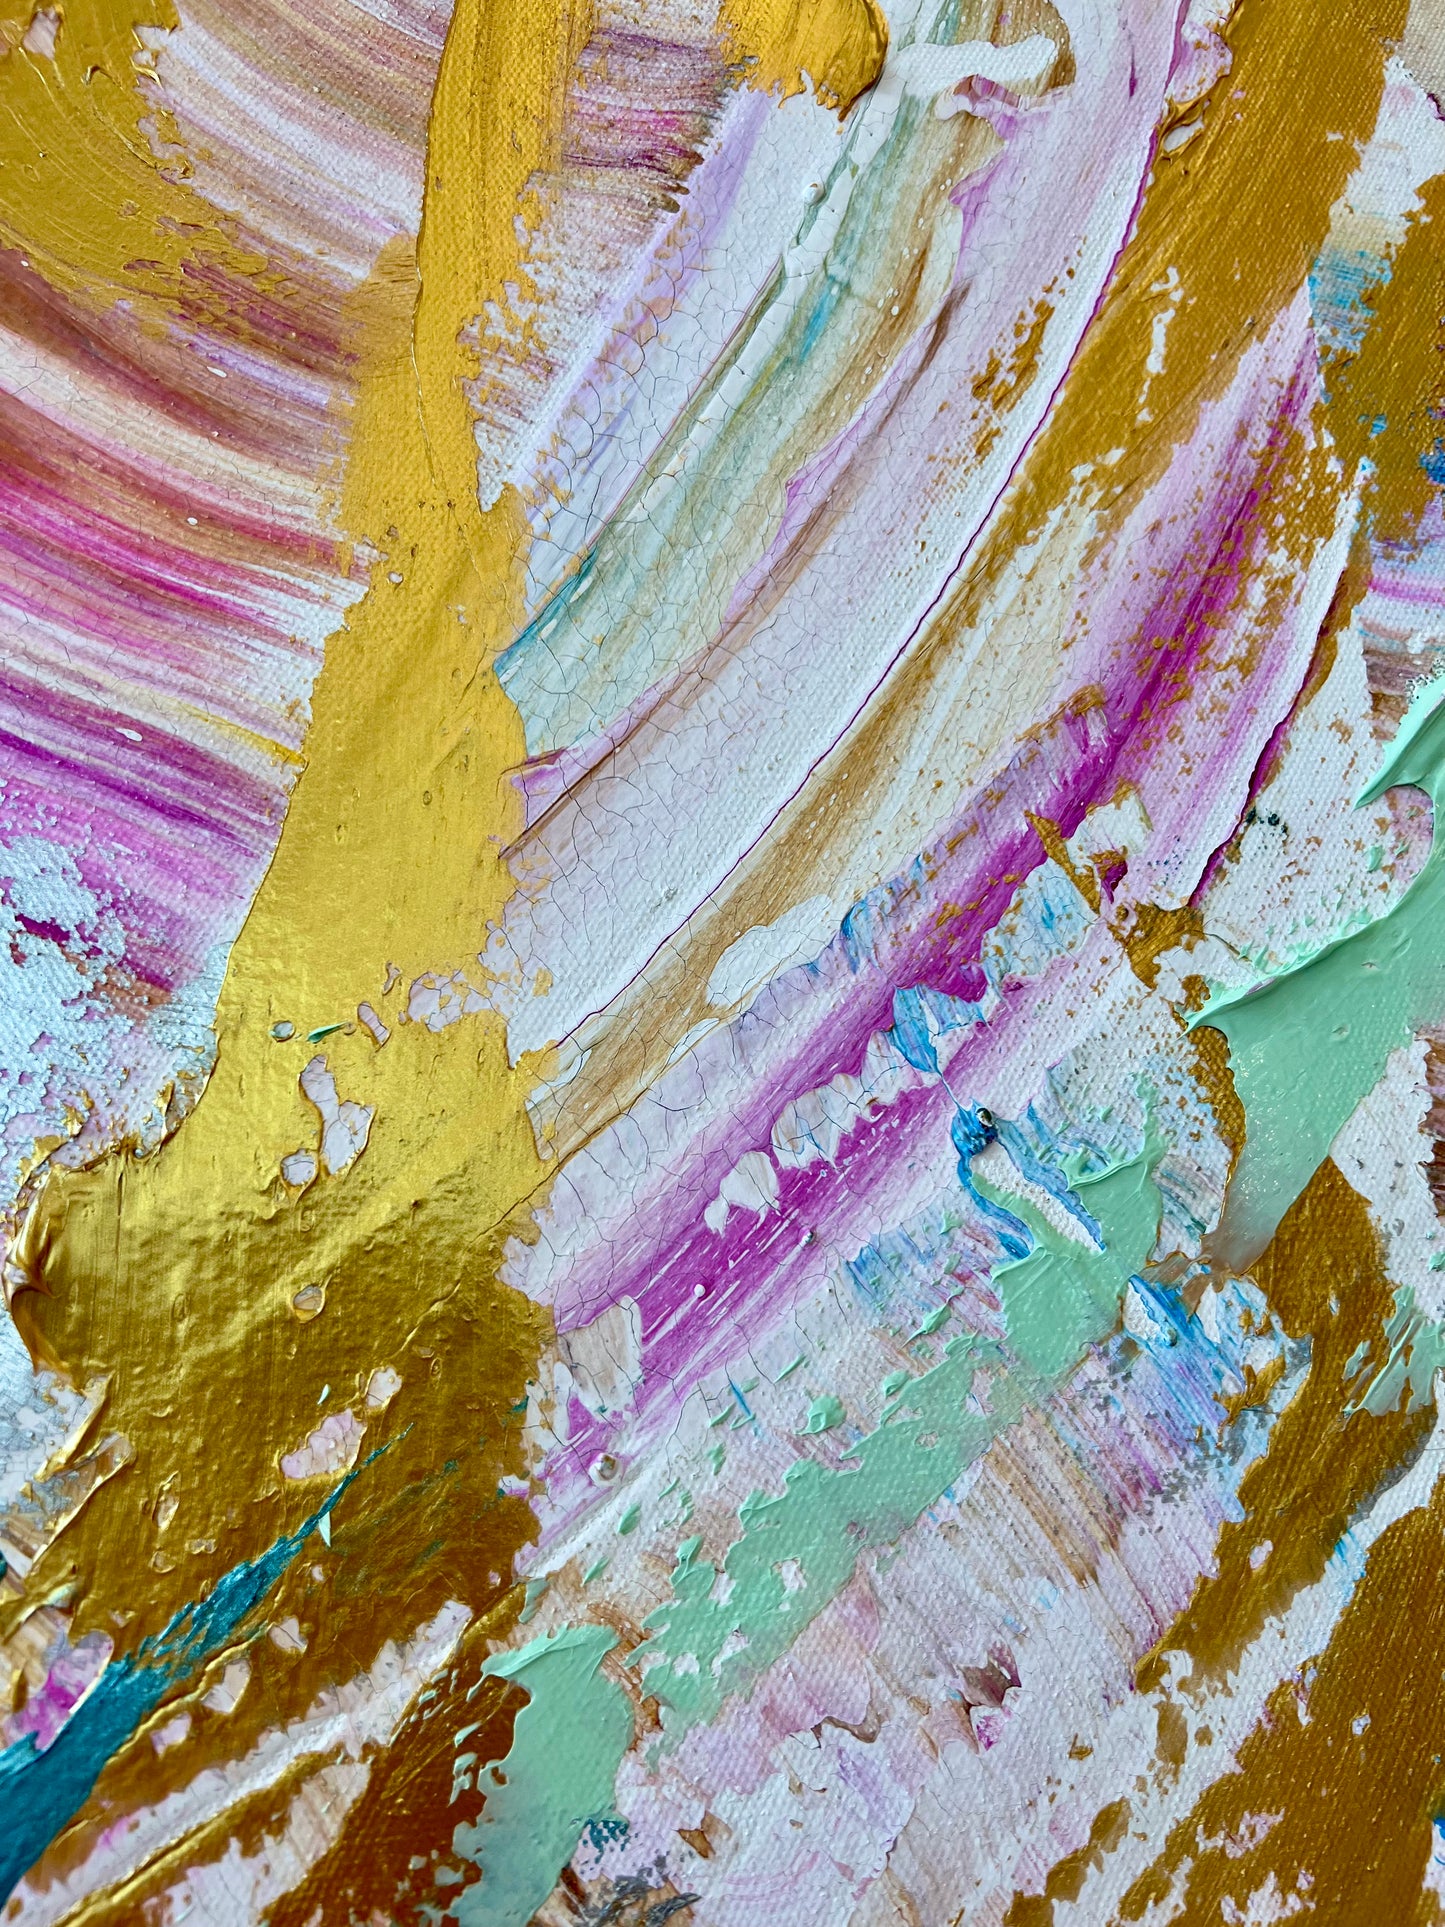 Pastel Swirl / metallic abstract no. 1 / De Fer Troy Hill